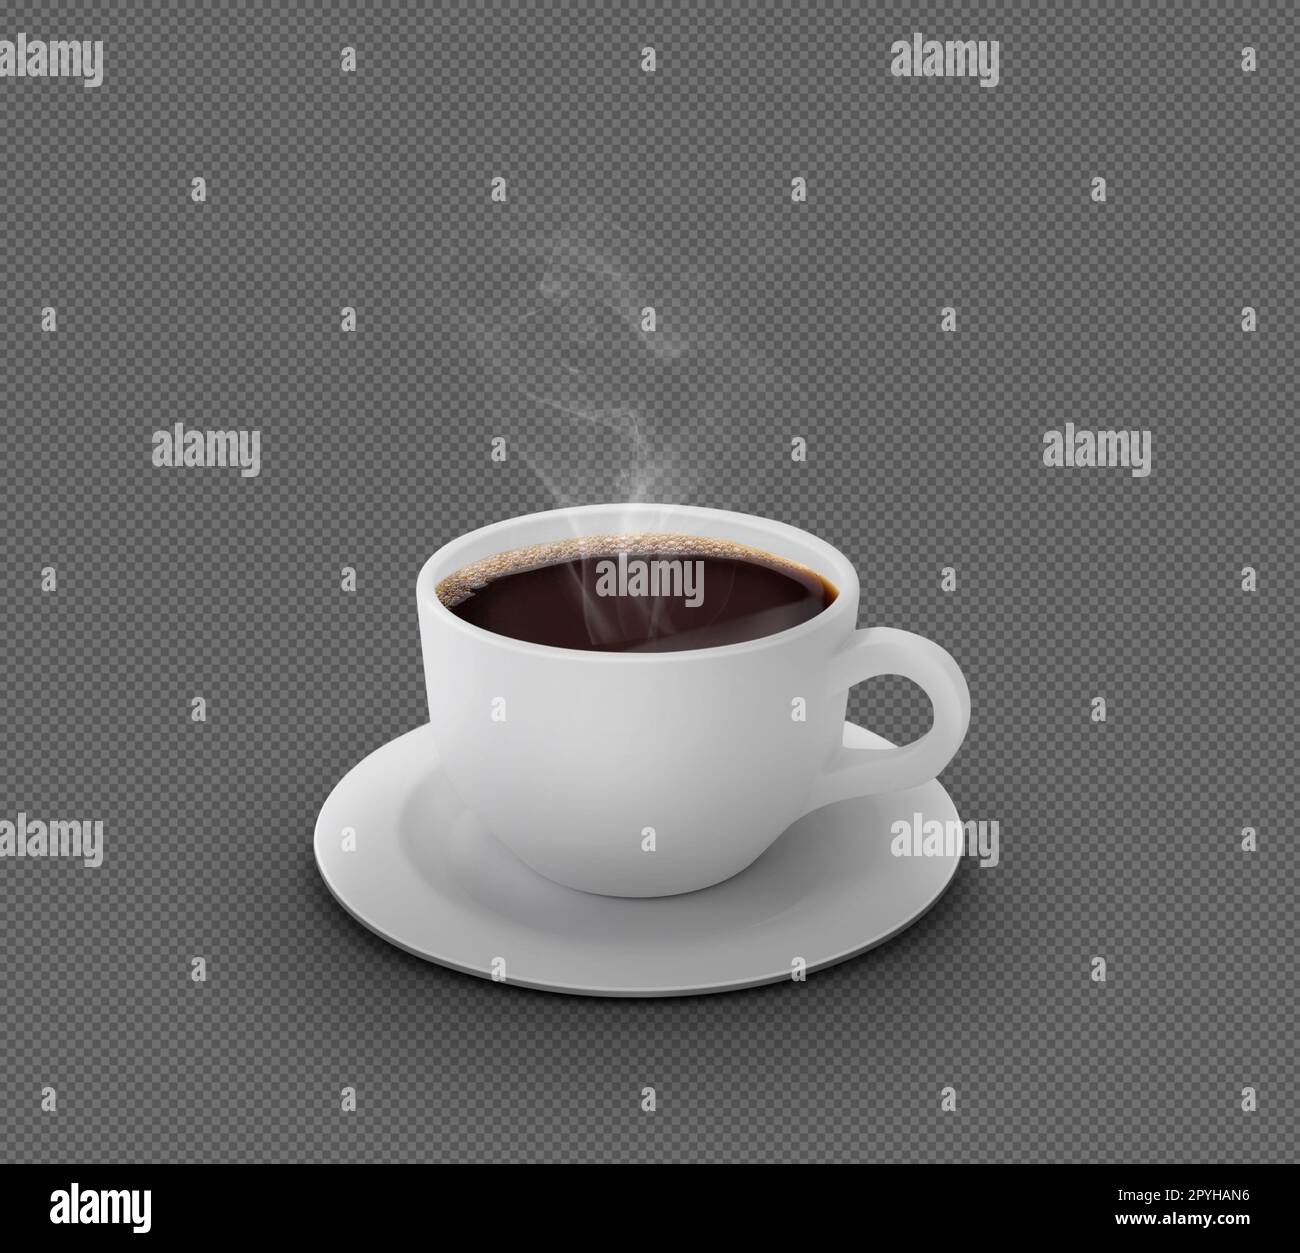 Tazza da caffè bianca realistica con fumo isolato su una copia di sfondo trasparente Foto Stock